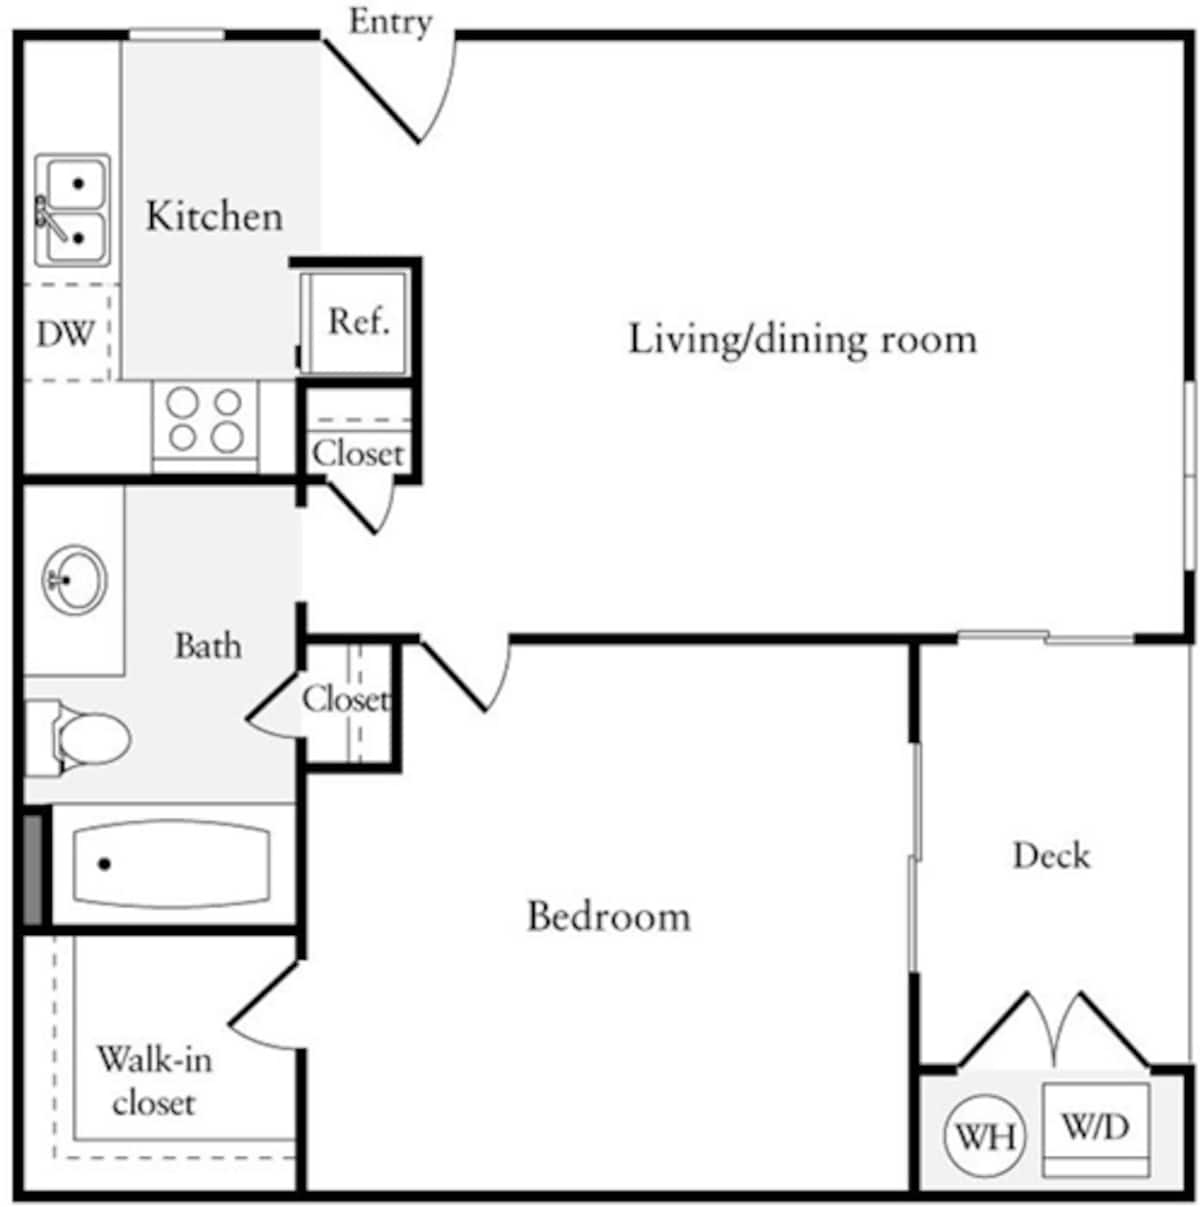 Floorplan diagram for 1 Bedroom A, showing 1 bedroom